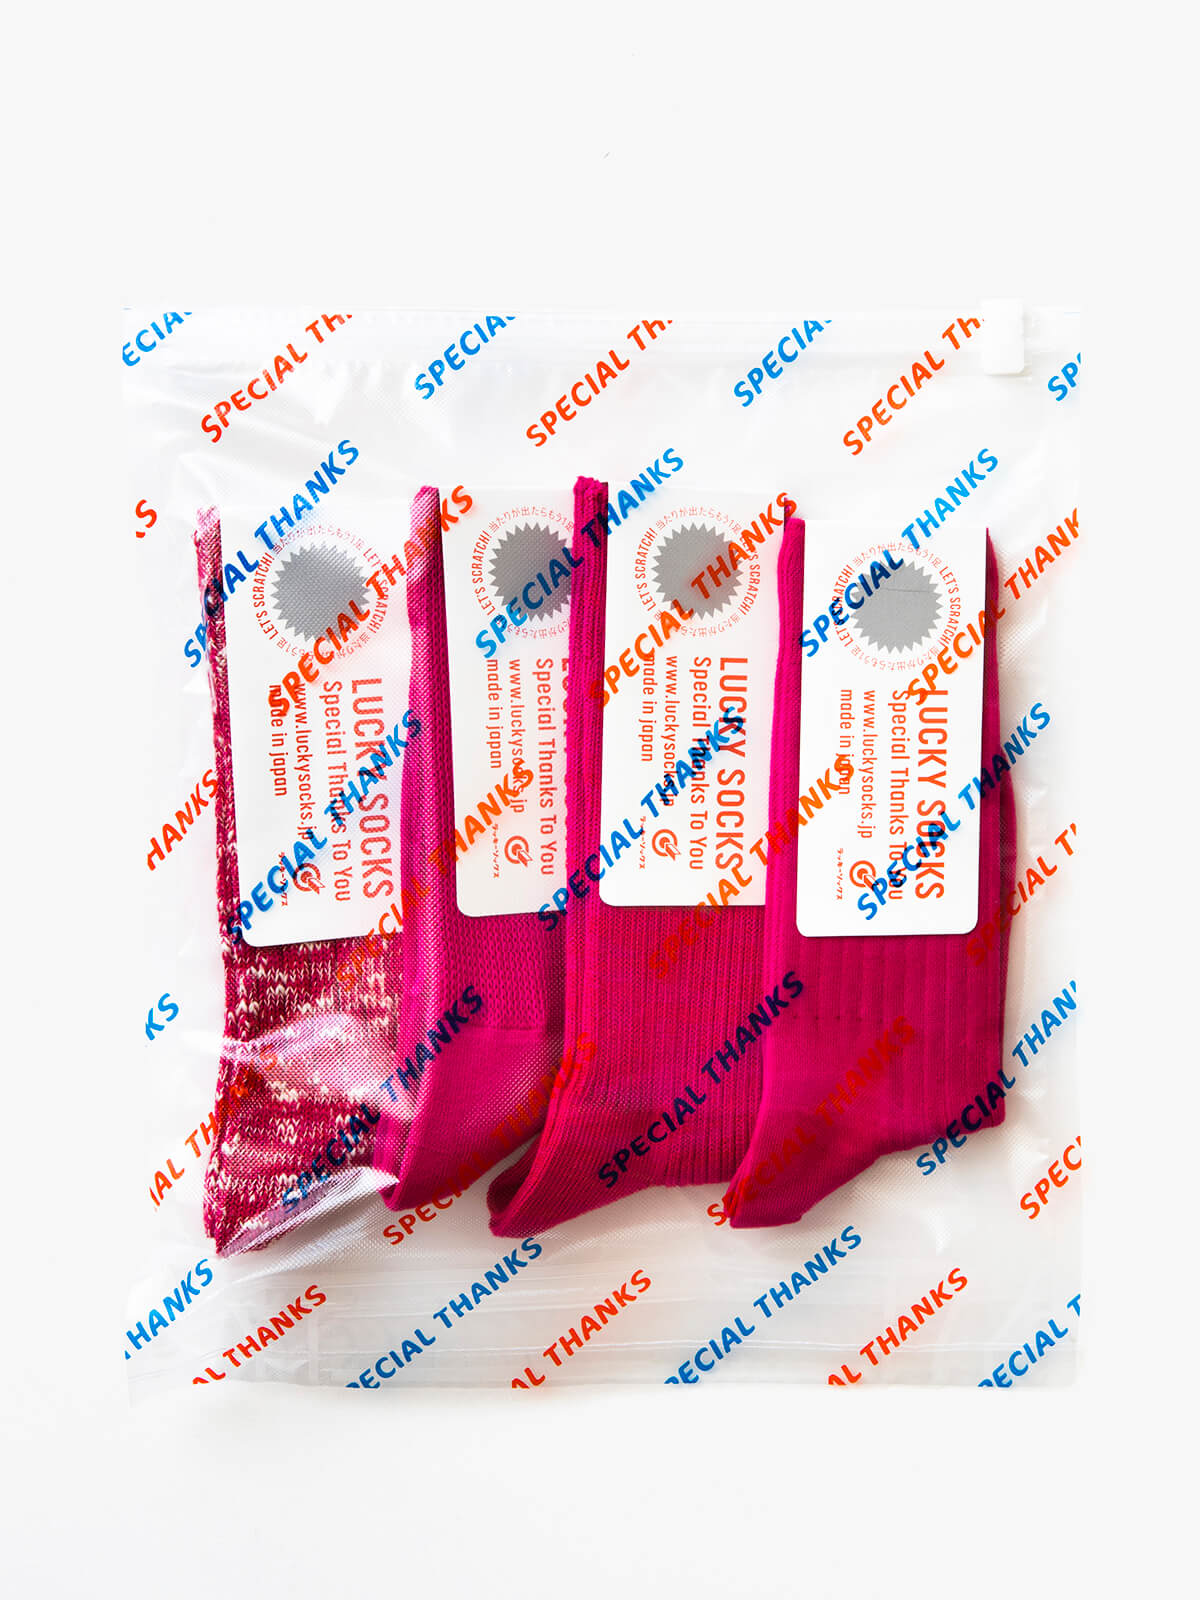 当たりつきギフト専用靴下のLUCKY SOCKS（ラッキーソックス）の4pcs Gift Pack（4ピースギフトパック）のピンク